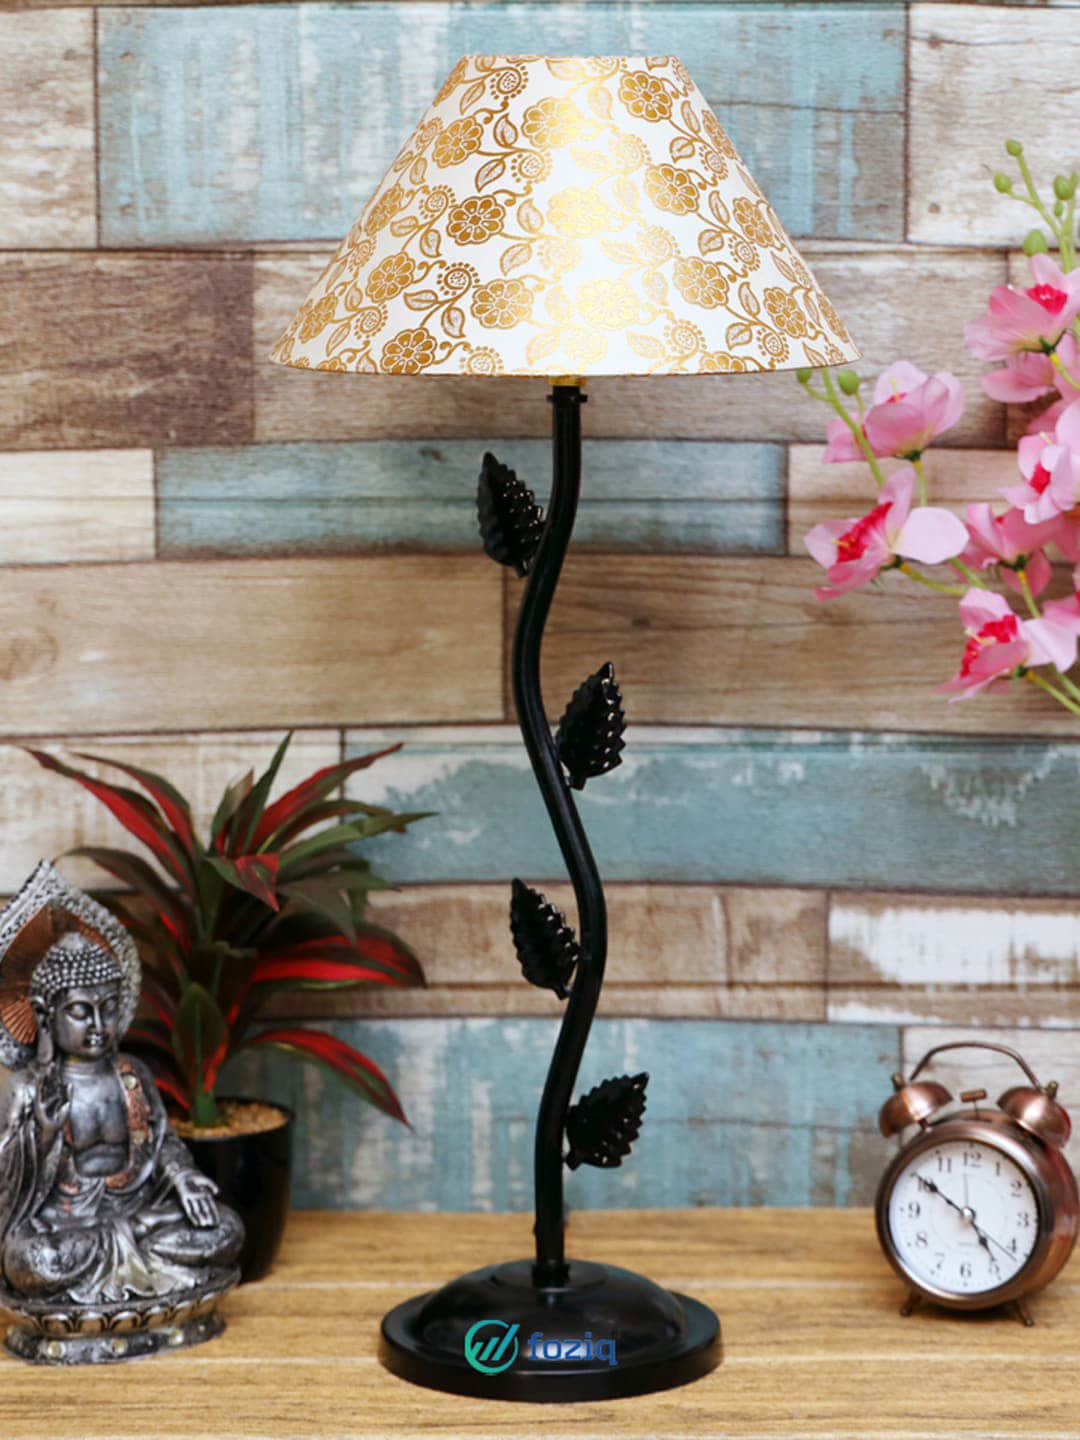 foziq Black & White Printed Table Lamp Price in India